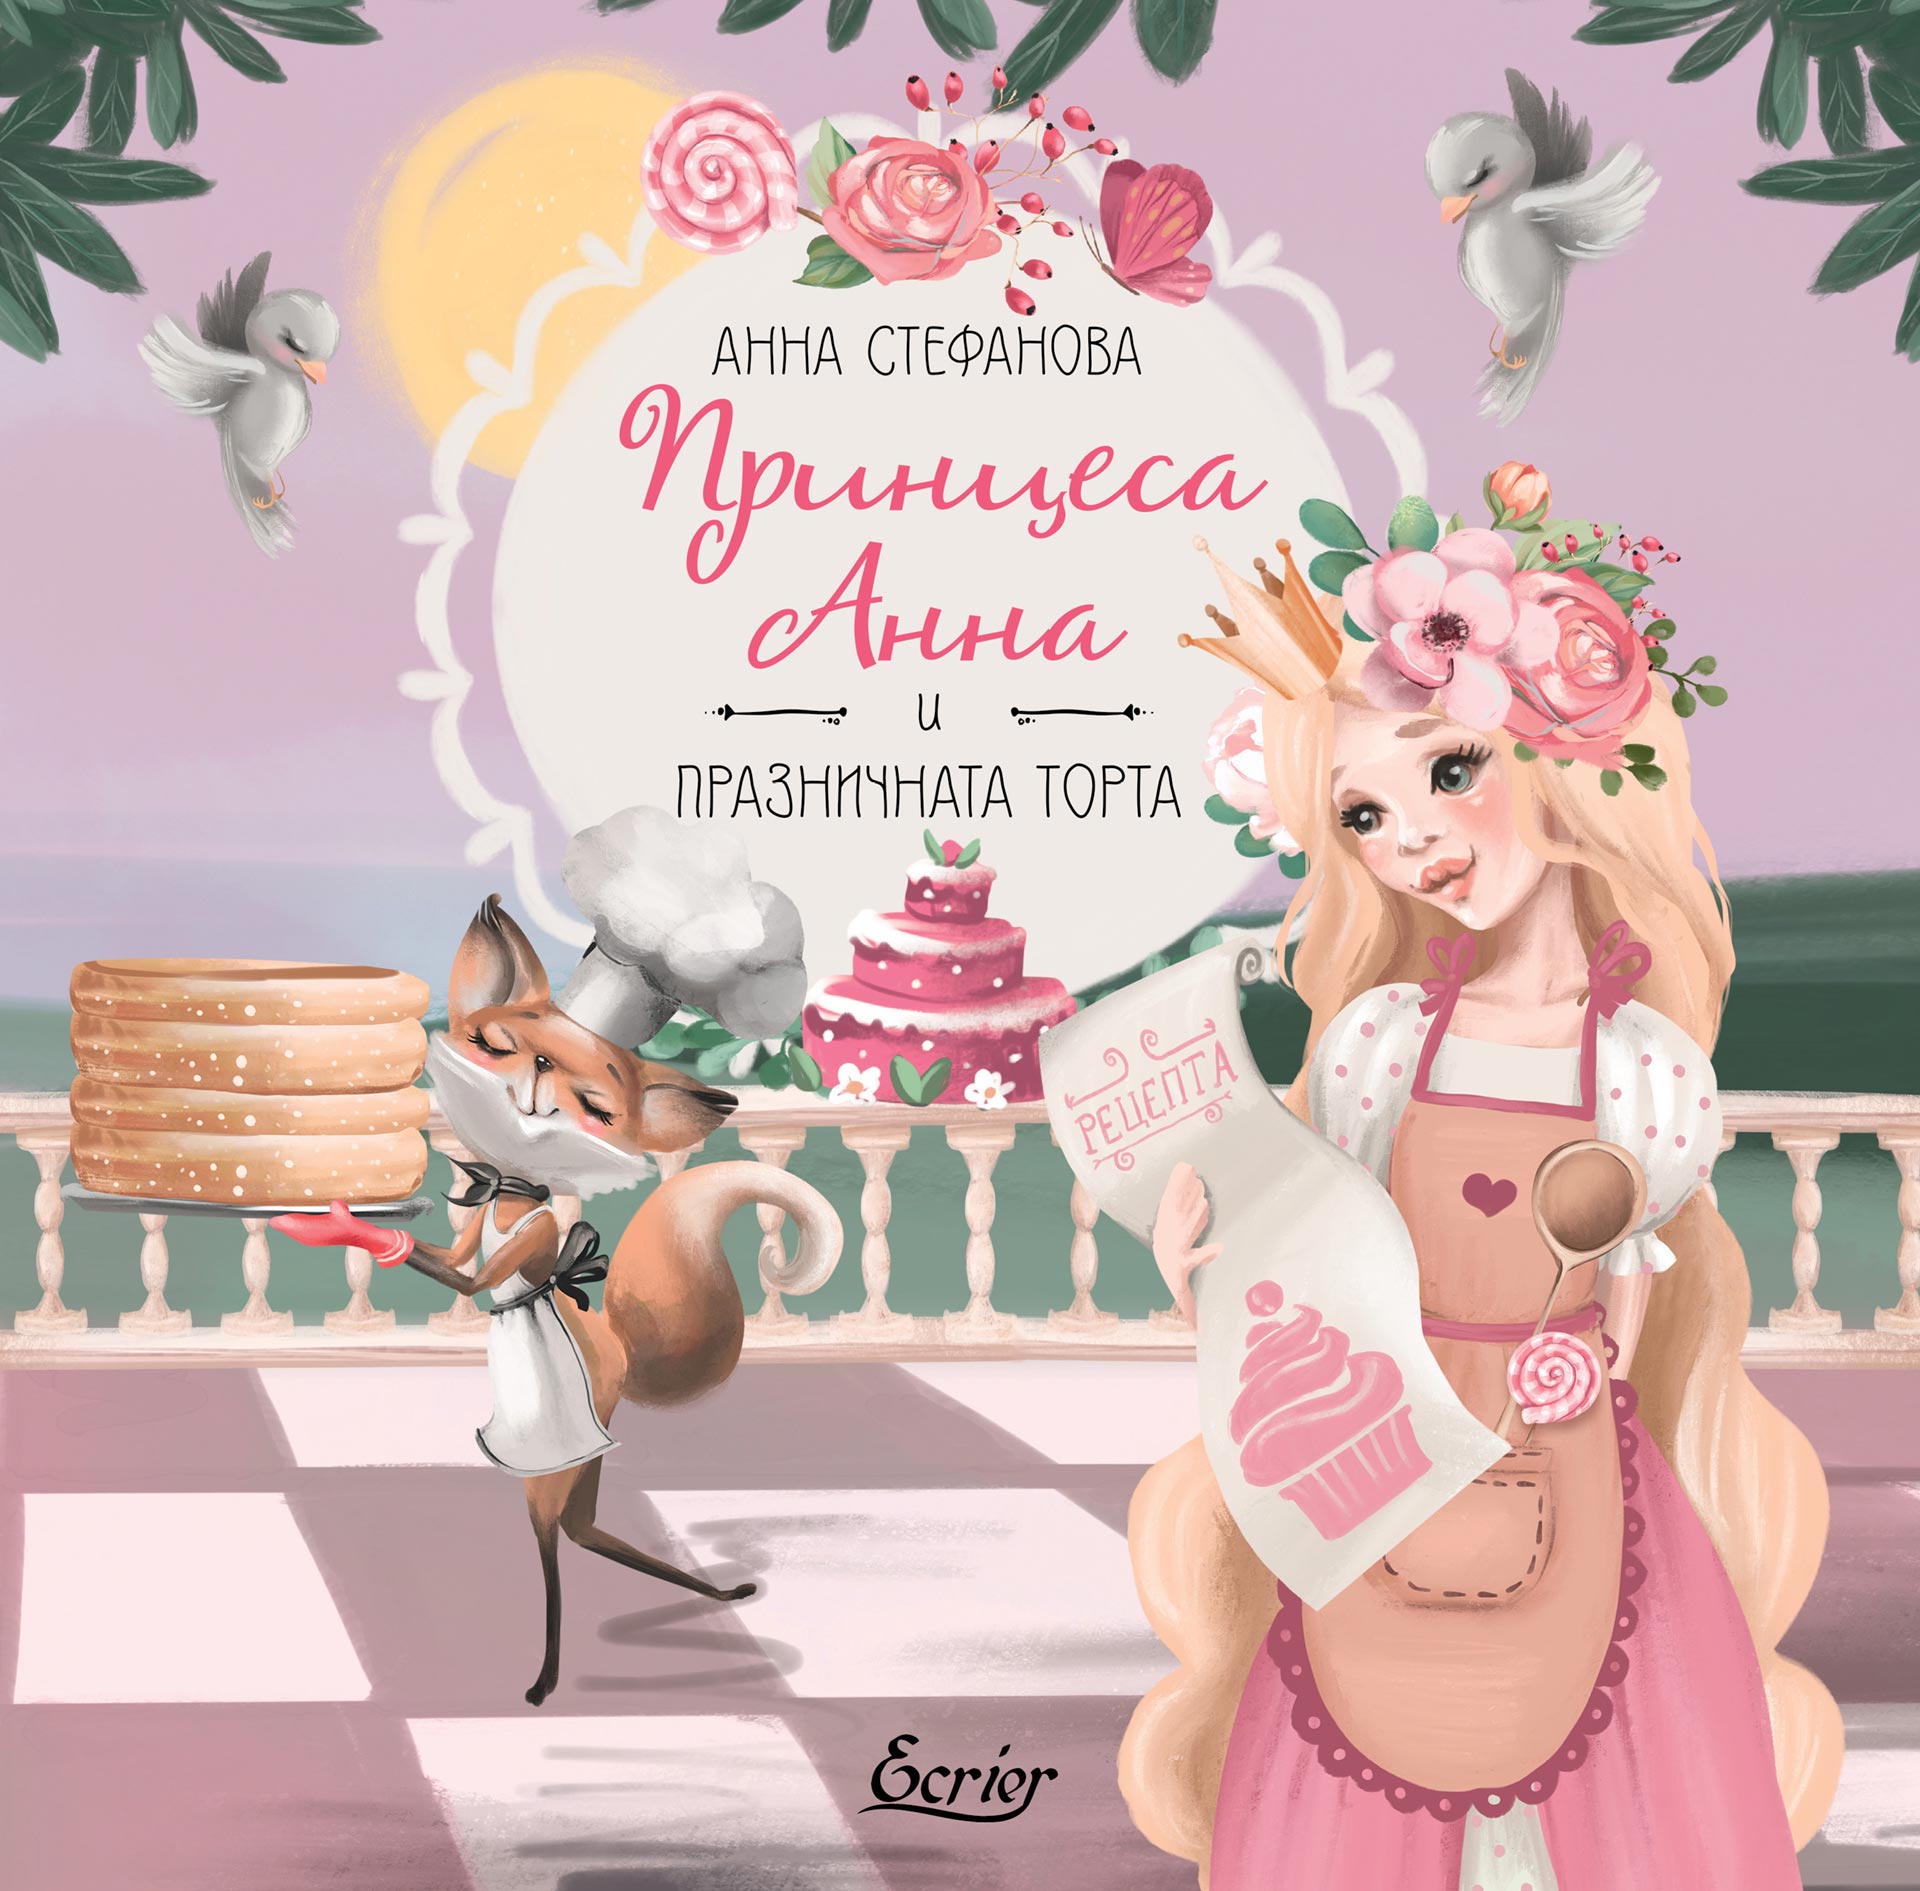 Анна Стефанова: "Принцеса Анна и празничната торта"